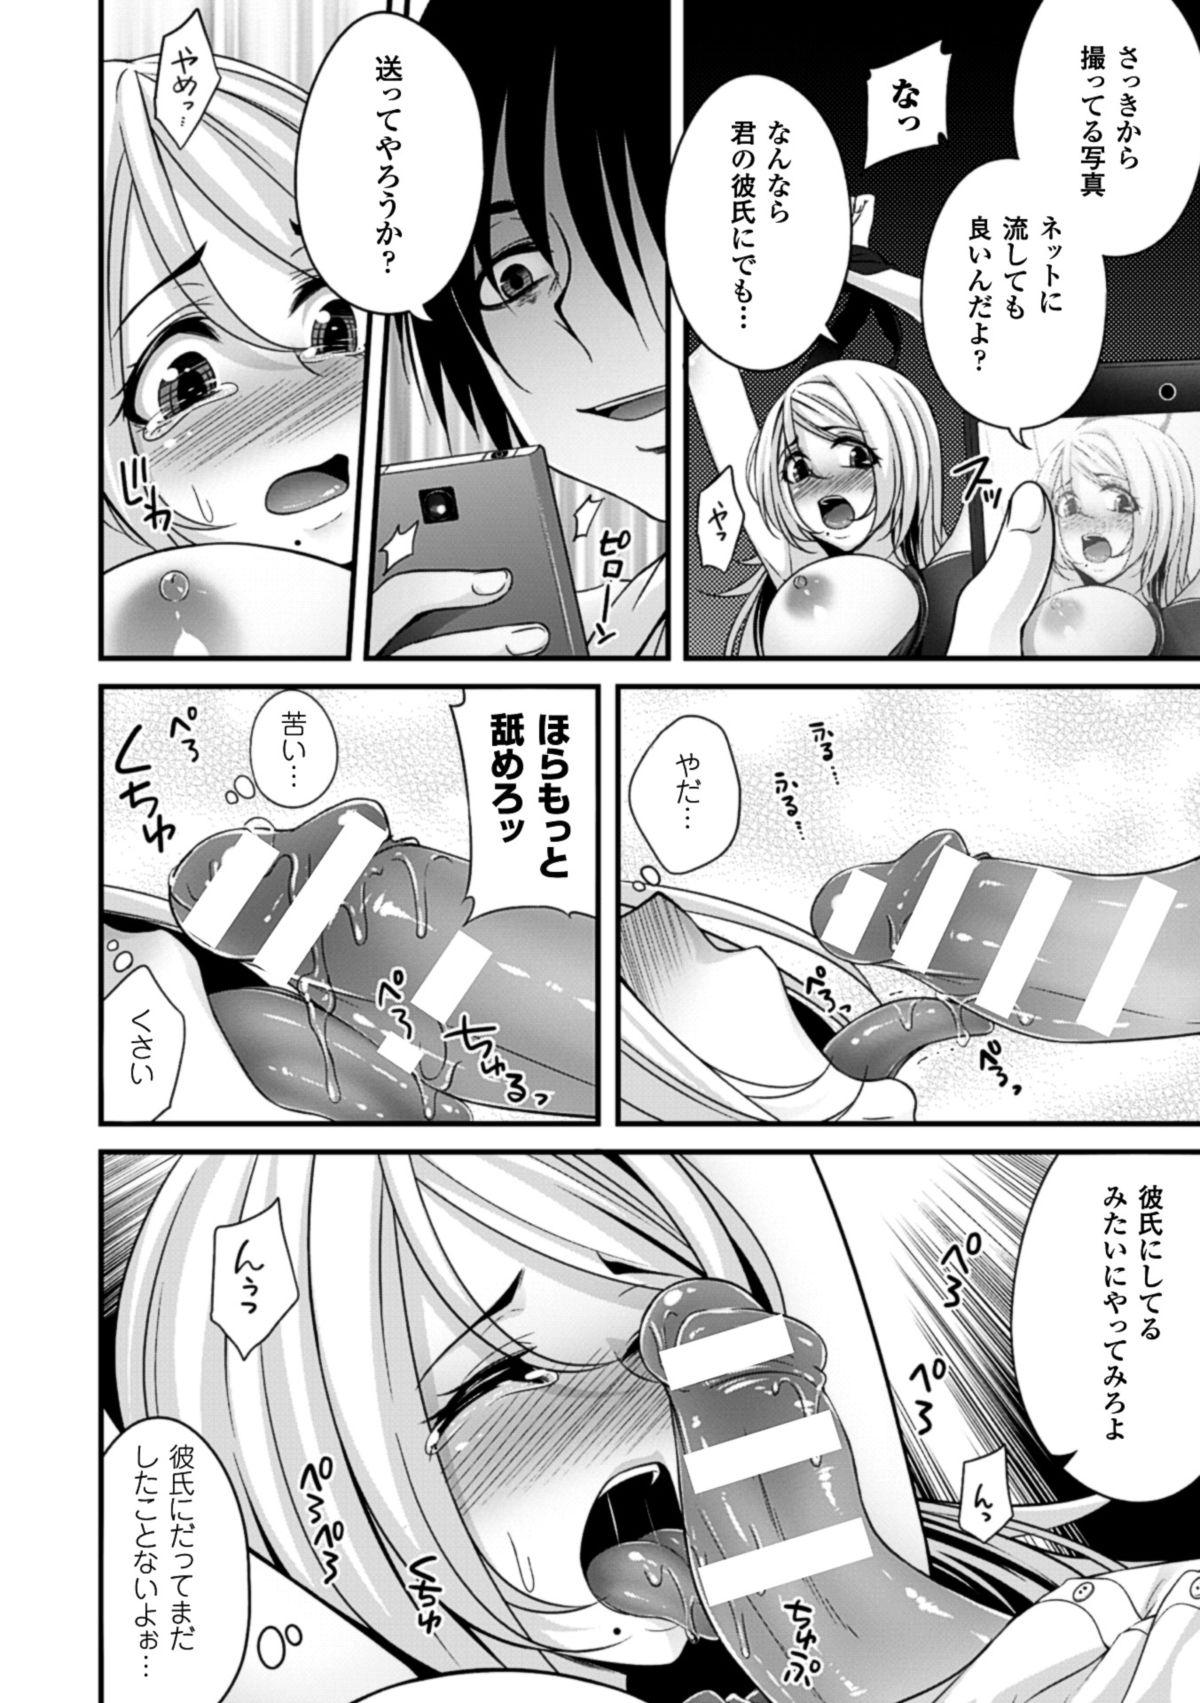 [Anthology] 2D Comic Magazine - ReaJuu Bishoujo-tachi o Haramase Ninshin! Vol. 1 [Digital] 14